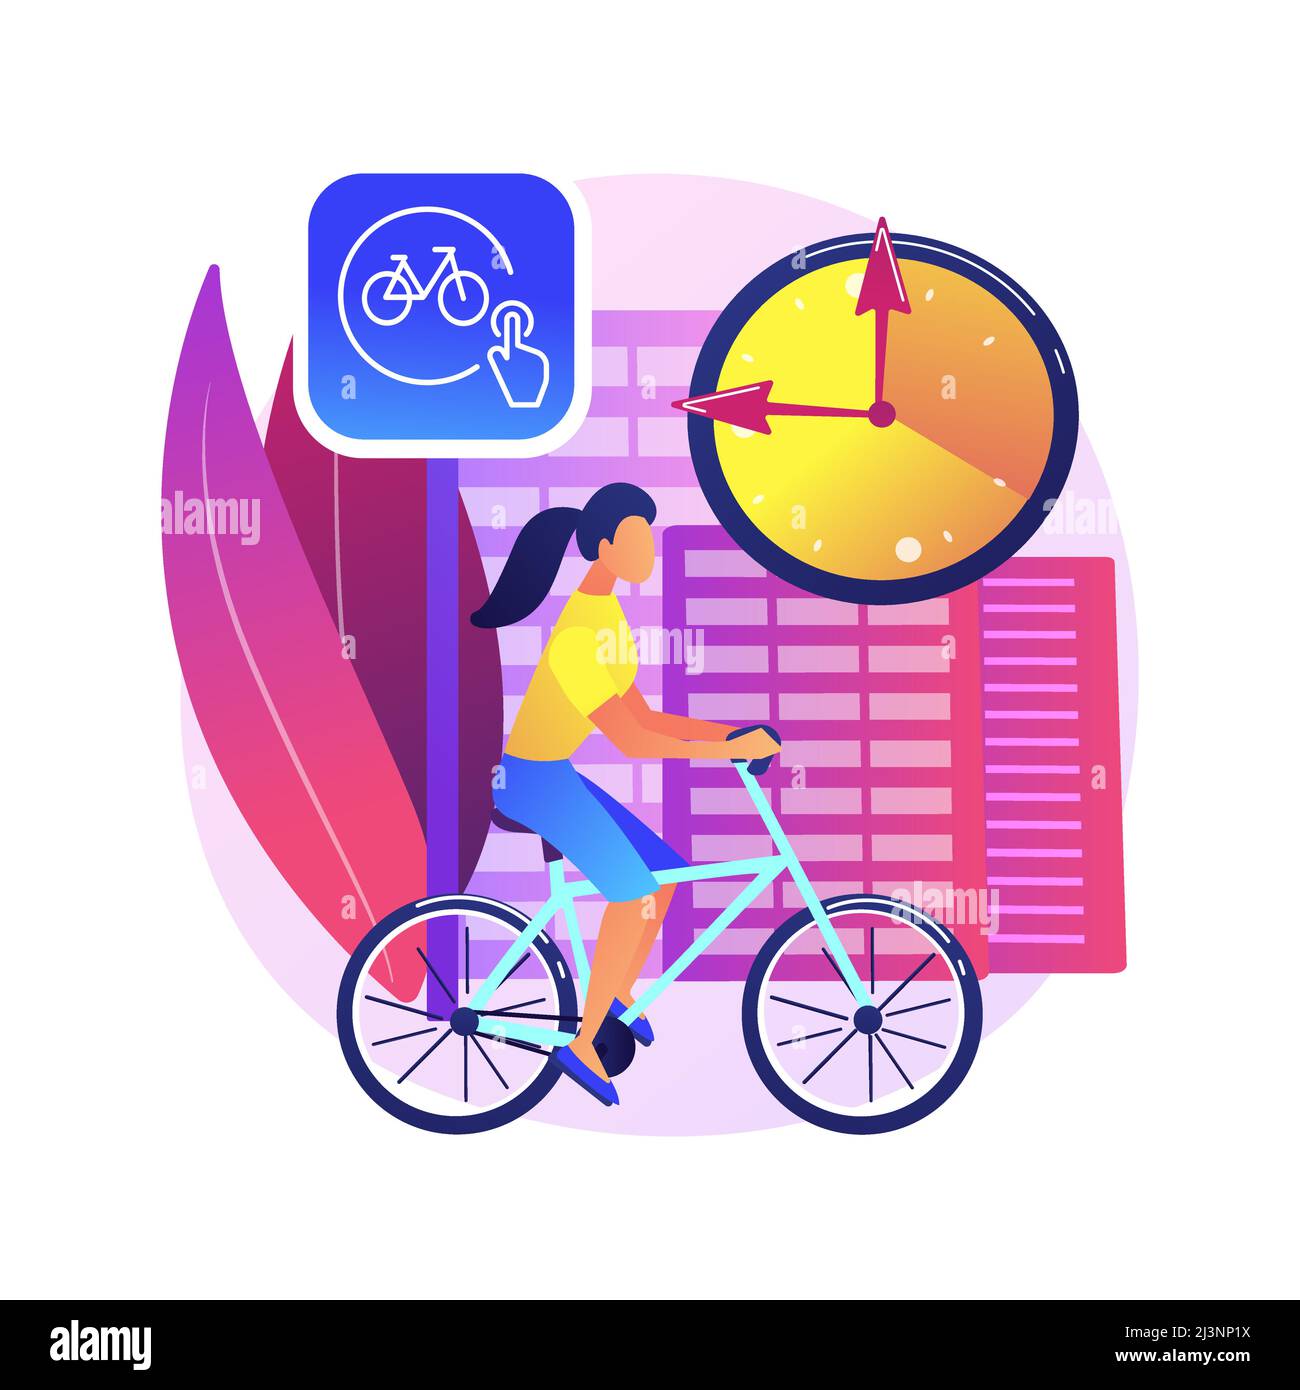 Illustration vectorielle abstraite de concept de partage de vélo. Location publique de vélos, application de partage de vélos, transport urbain vert, réserver un trajet en ligne, ec Illustration de Vecteur